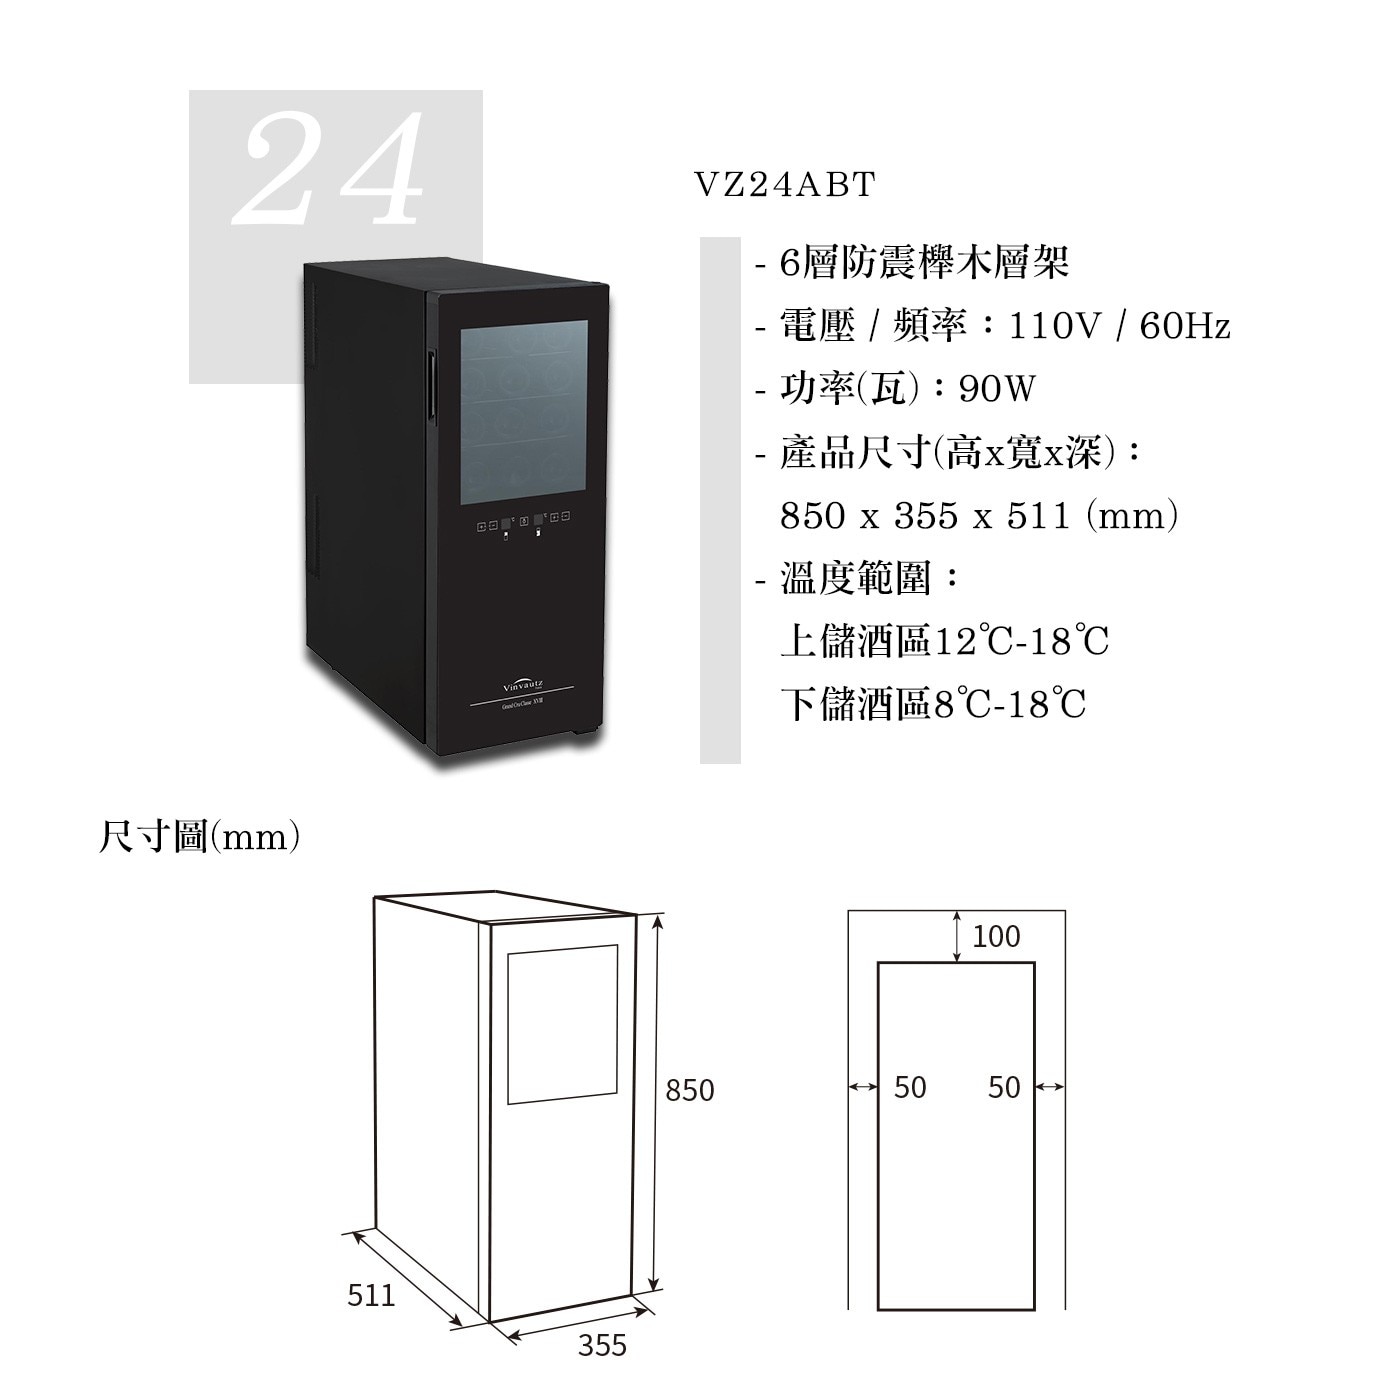 Vinvautz 雙溫區酒櫃，雙溫區獨立製冷系統，電子溫控，防震櫸木層架，內置LED燈，運作寧靜。